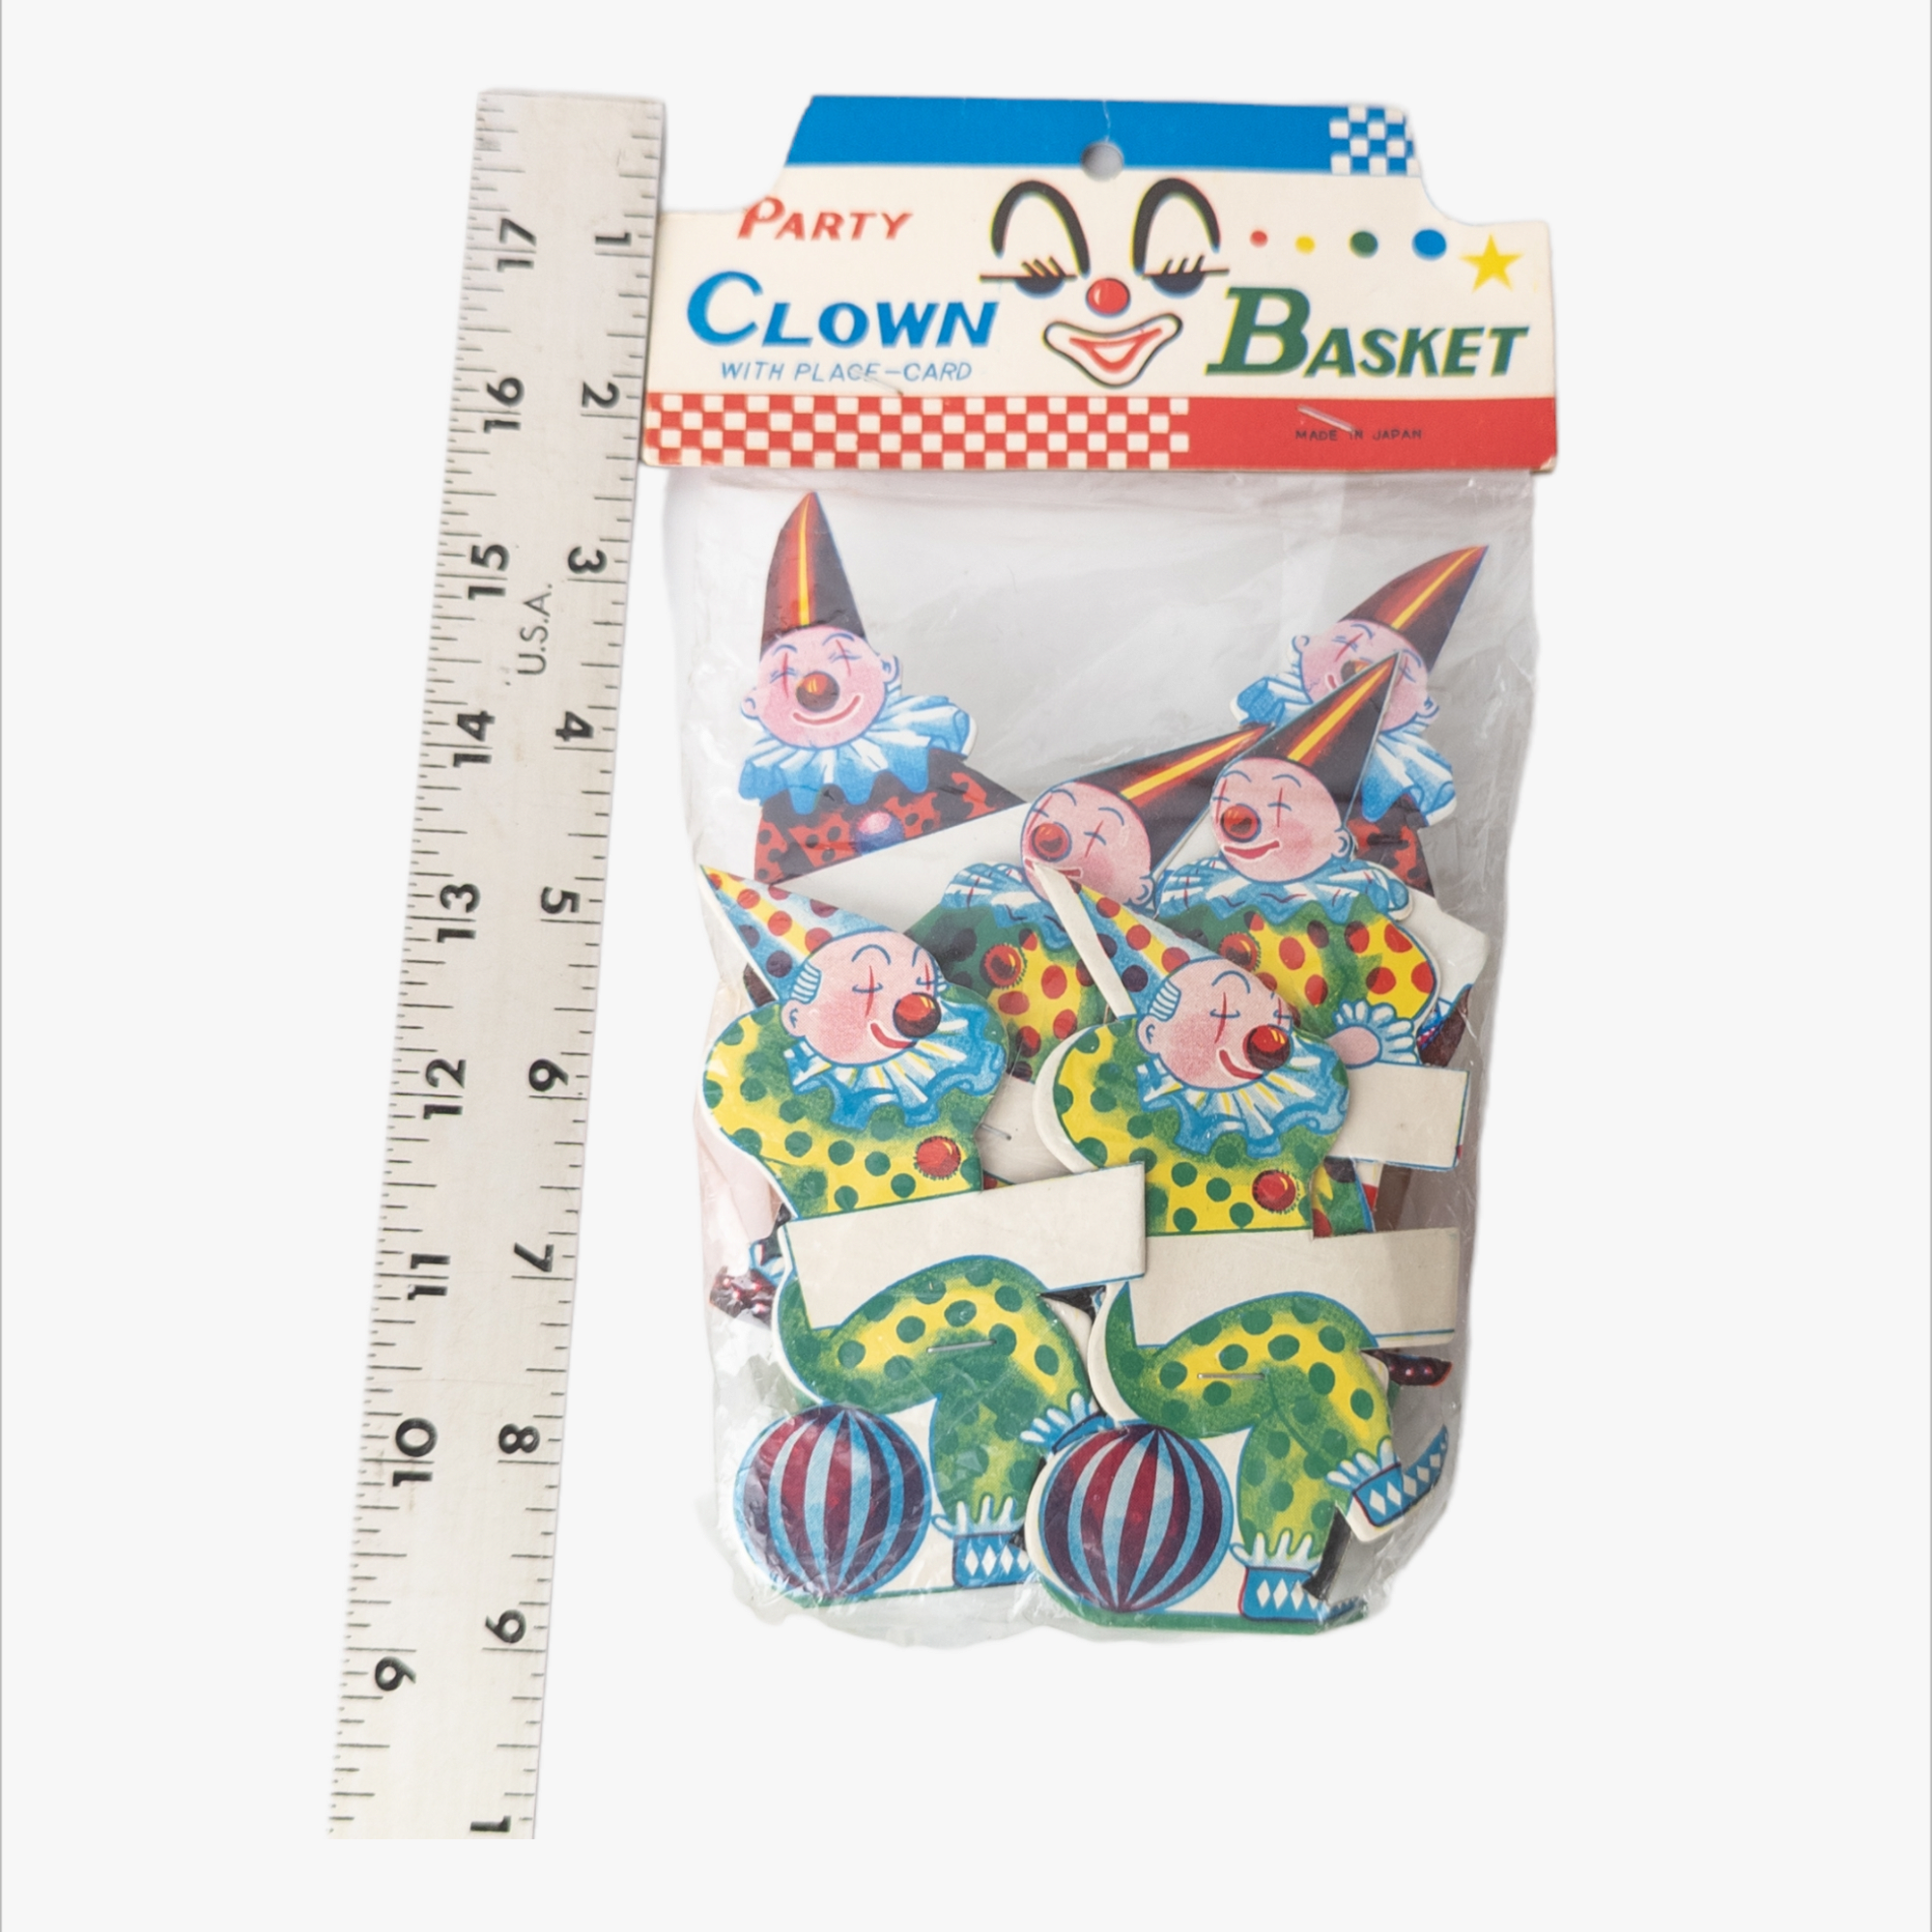 Vintage NOS Party Clown Basket Set Sealed Bag